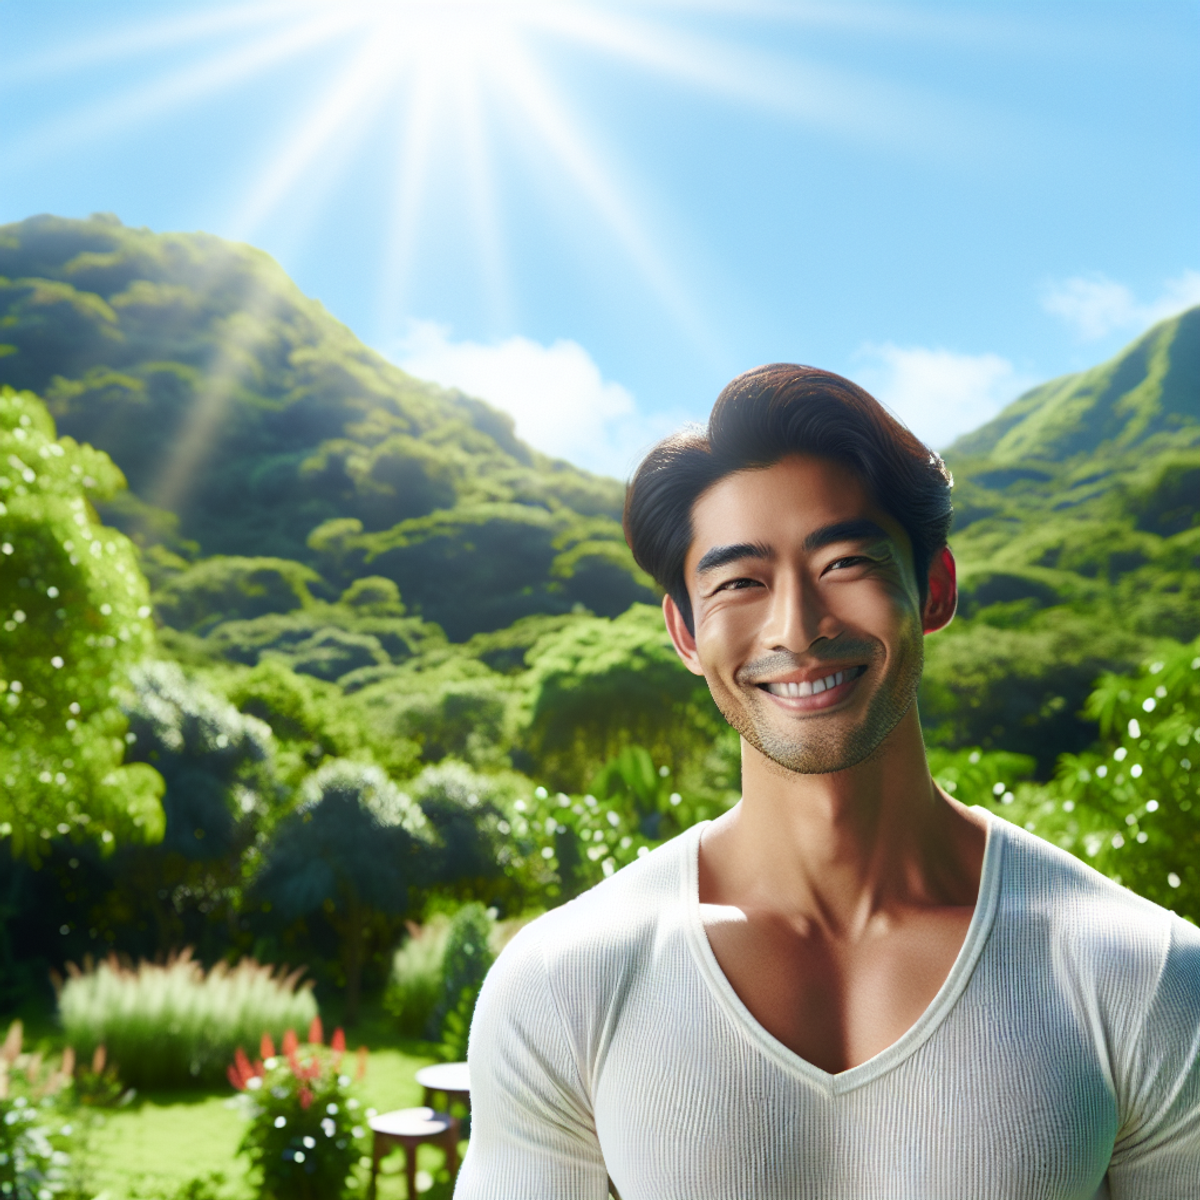 En mand, der smiler i en frodig, solrig udendørs omgivelse.